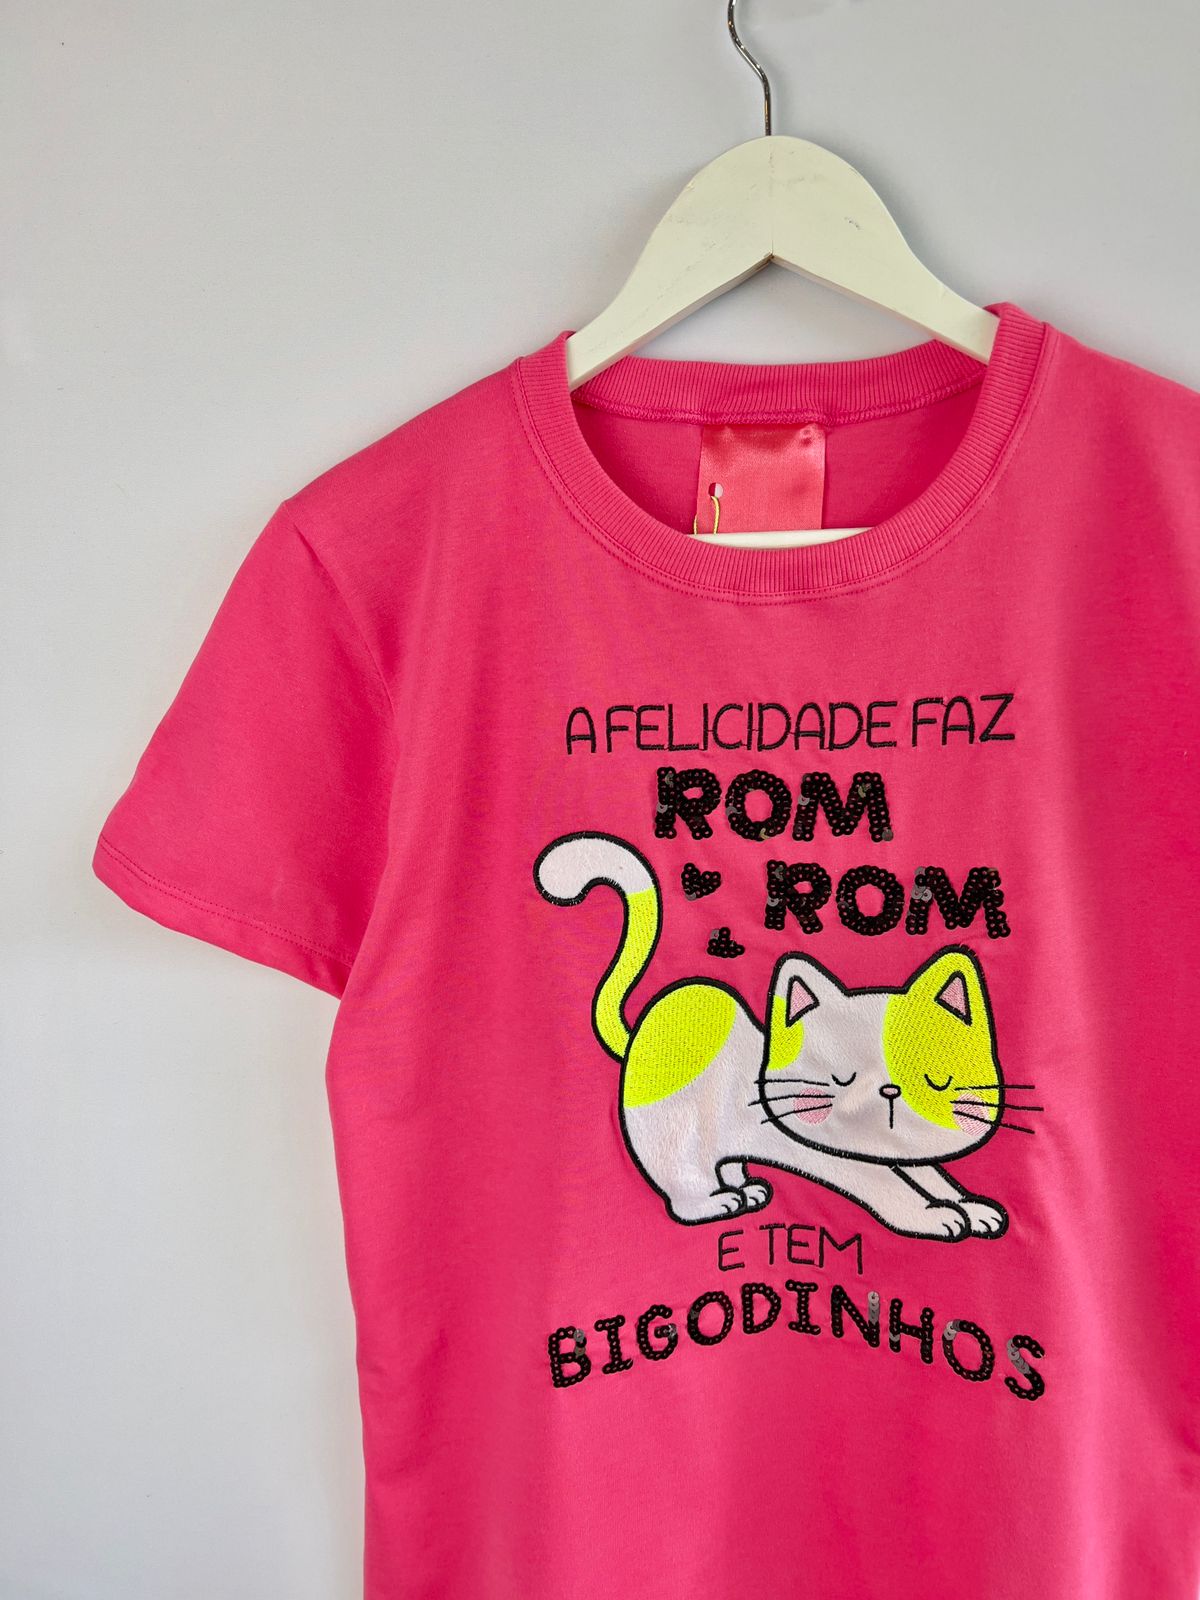 Camiseta Feminina em Meia Malha Rosa com Bordado de Gato - A Felicidade faz Rom Rom e tem Bigodinhos